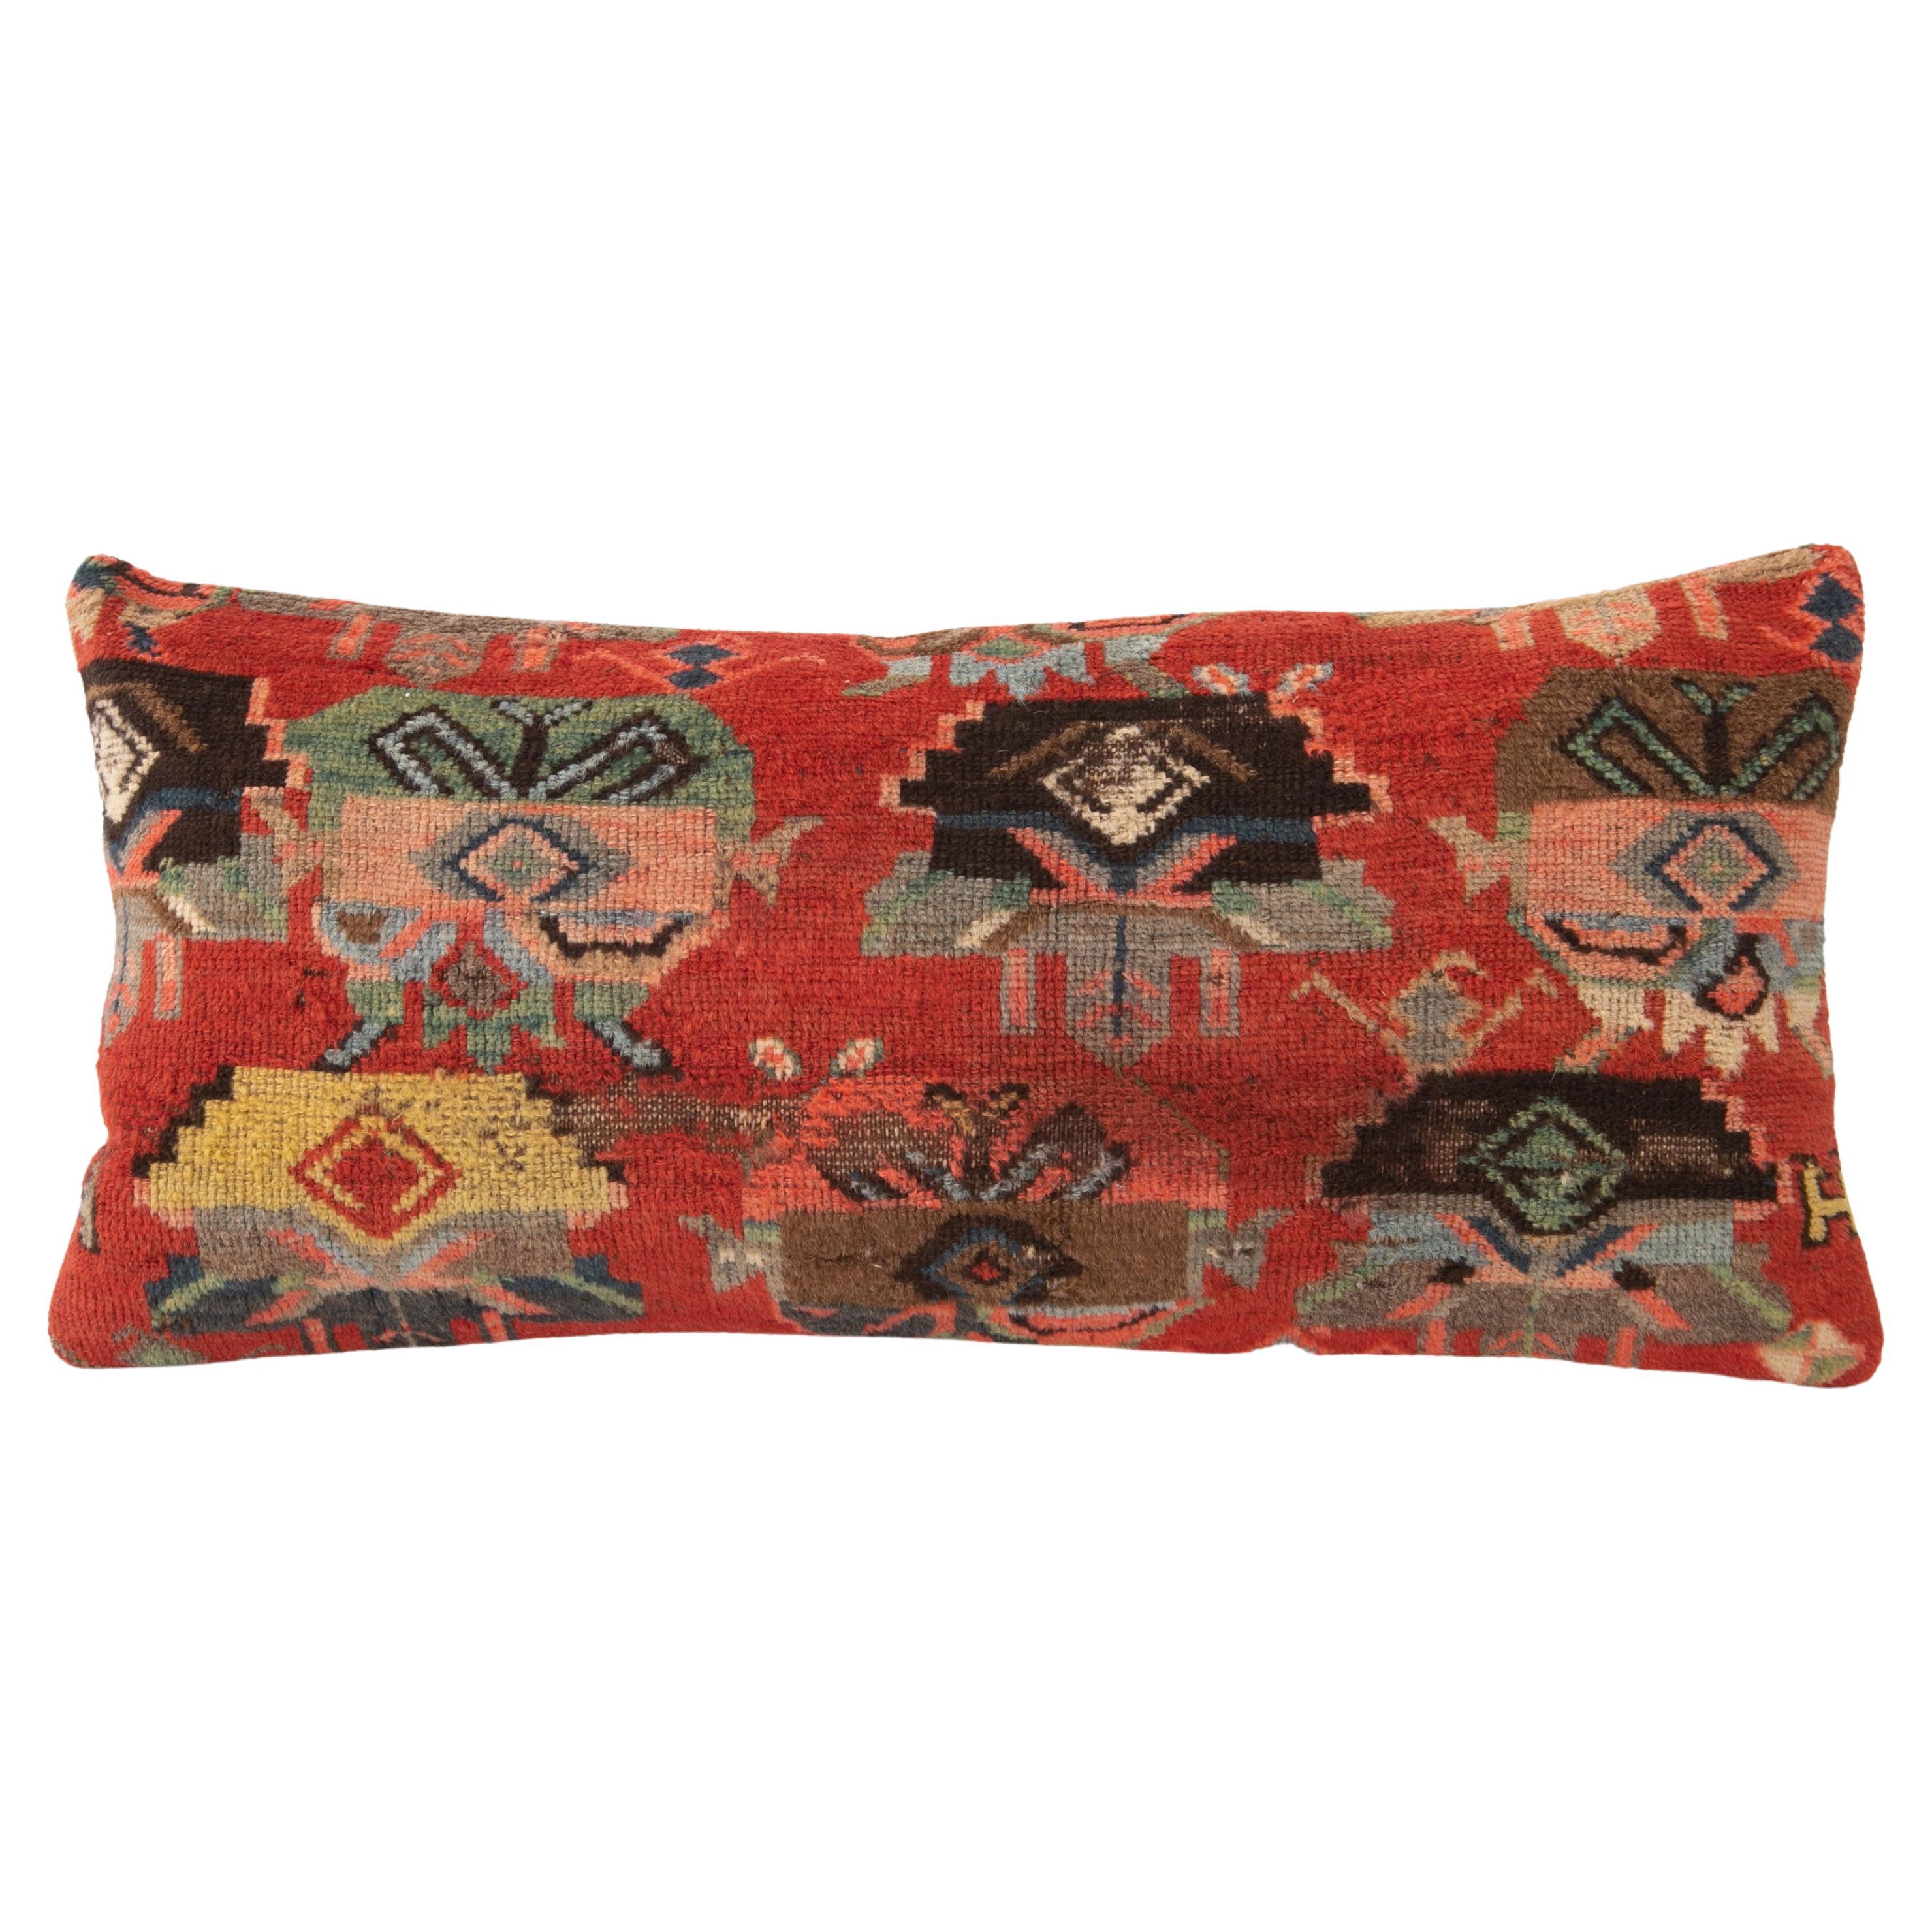 Couvre-oreiller en forme de tapis fait à partir d'un tapis caucasien du Karabagh, fin 19e / début 20e siècle